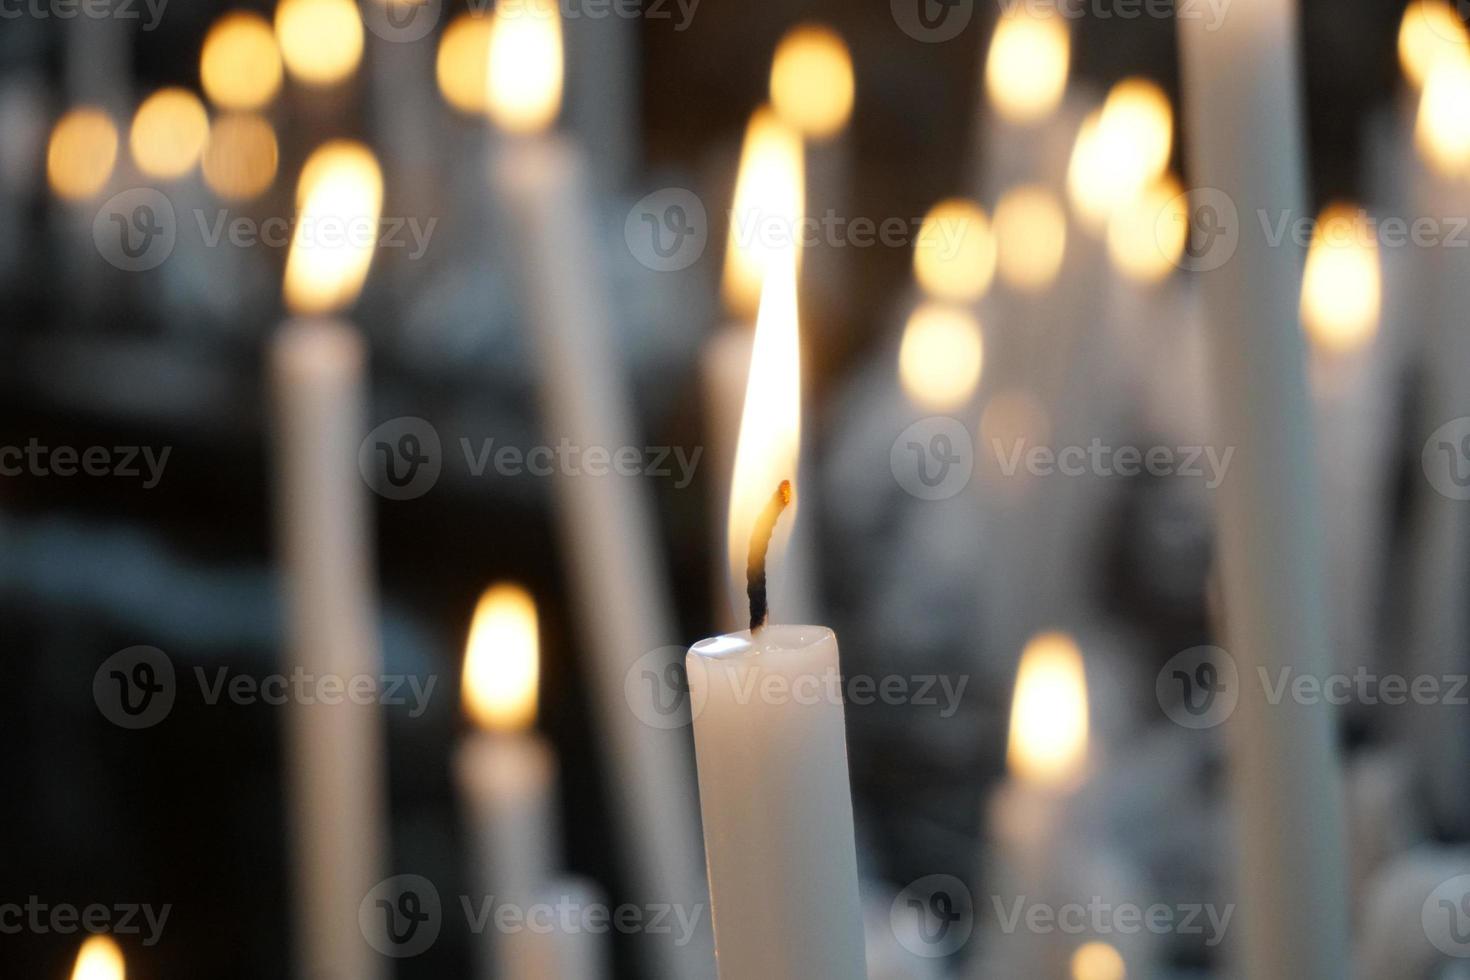 kerk votief kaarsen wit vlammen foto